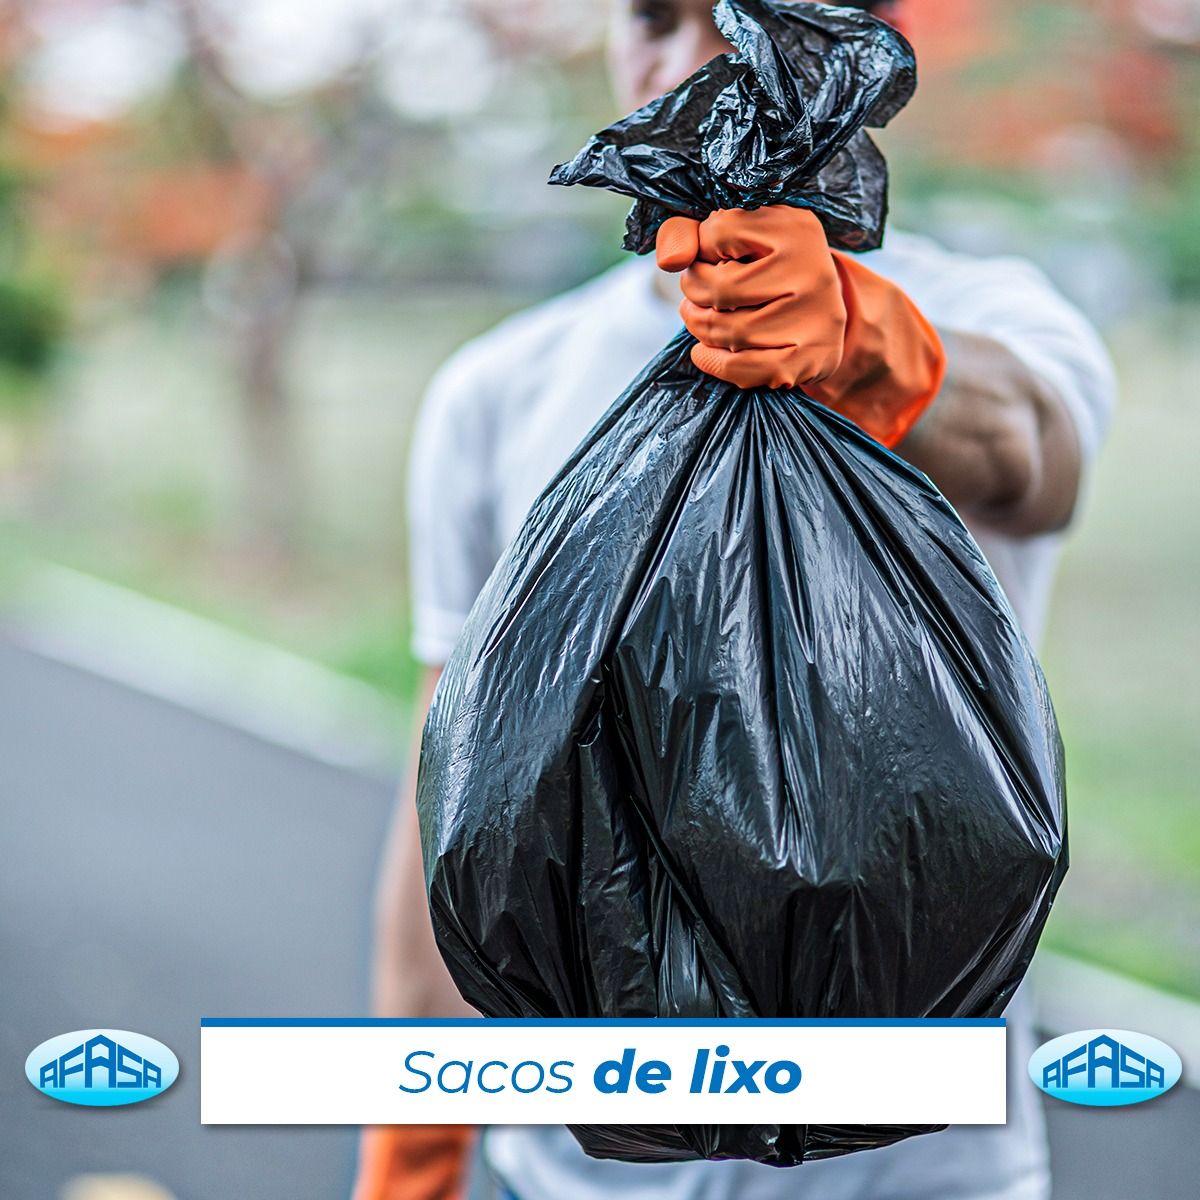 Sacos de Lixo Recuperado 🗑 Nossos sacos de lixo são projetados com qualidade superior e resistência, garantindo a contenção adequada dos resíduos. Eles são fabricados com materiais duráveis e resistentes, capazes de suportar cargas pesadas e evitando vazamentos ou ru